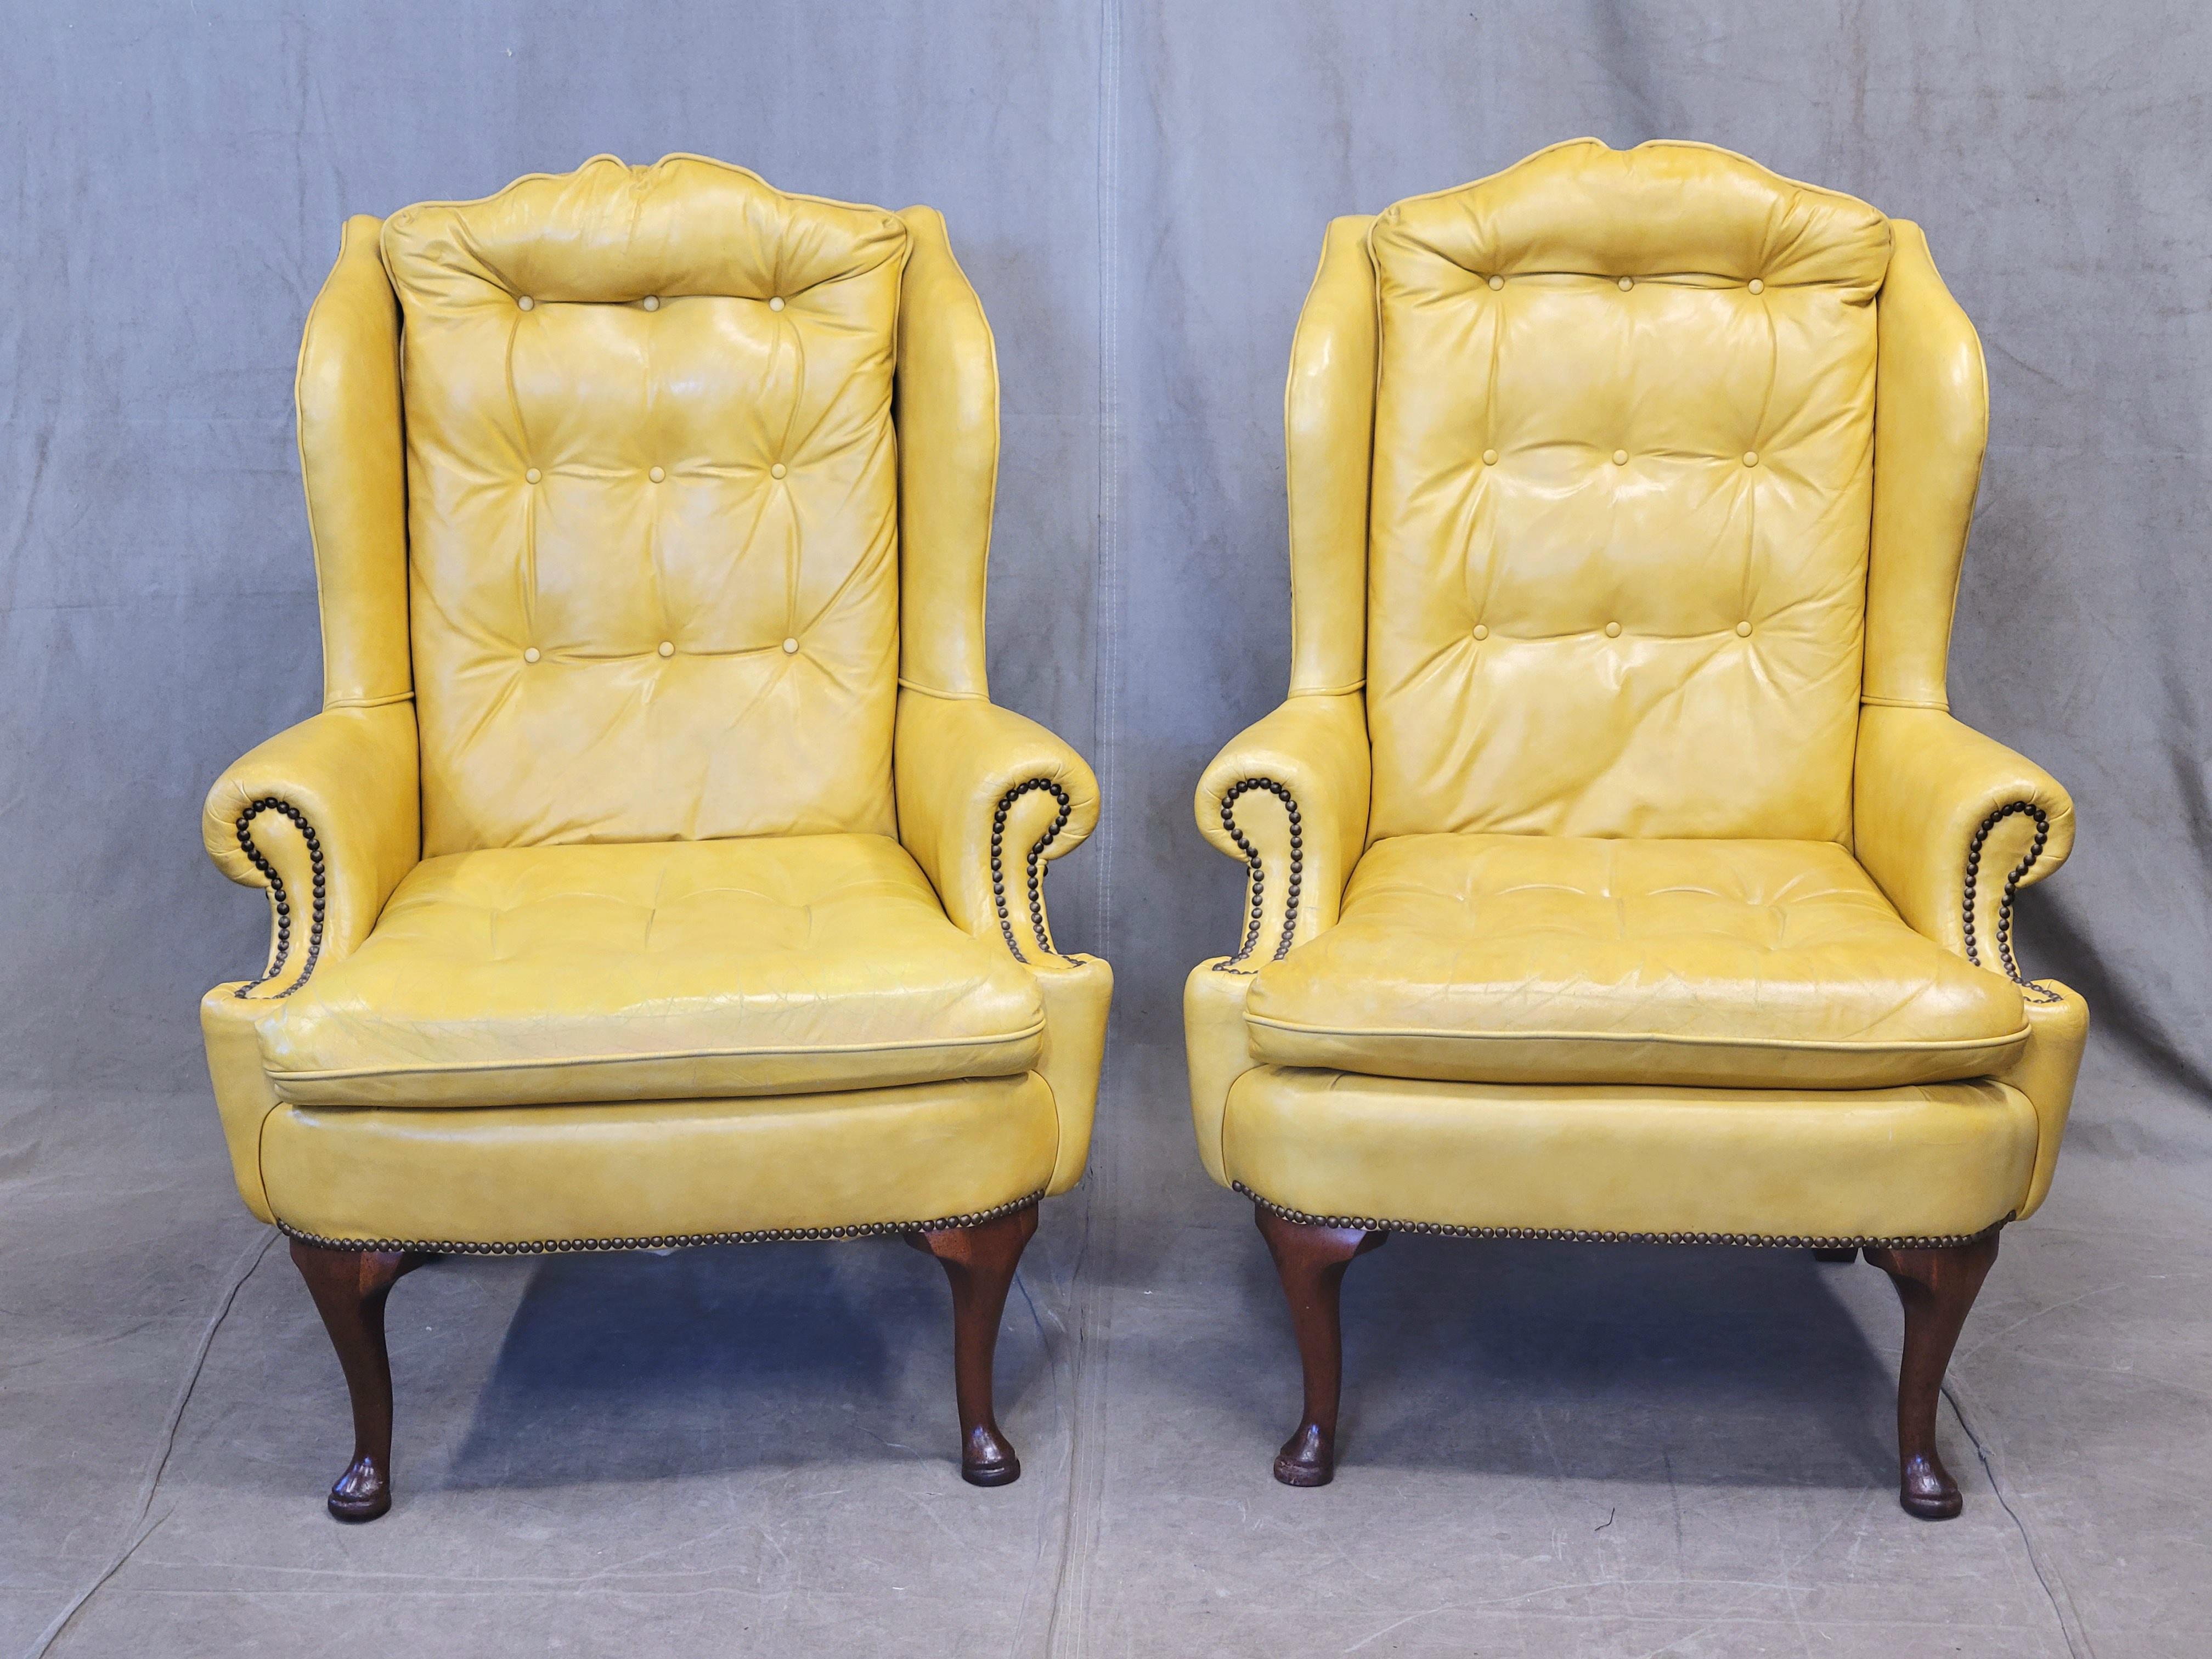 Une magnifique paire de fauteuils à oreilles Chesterfield jaunes vintage avec des têtes de clous en laiton, accompagnés de coussins lombaires en duvet botanique noir personnalisés. Les chaises, qui datent probablement des années 1970, sont en cuir